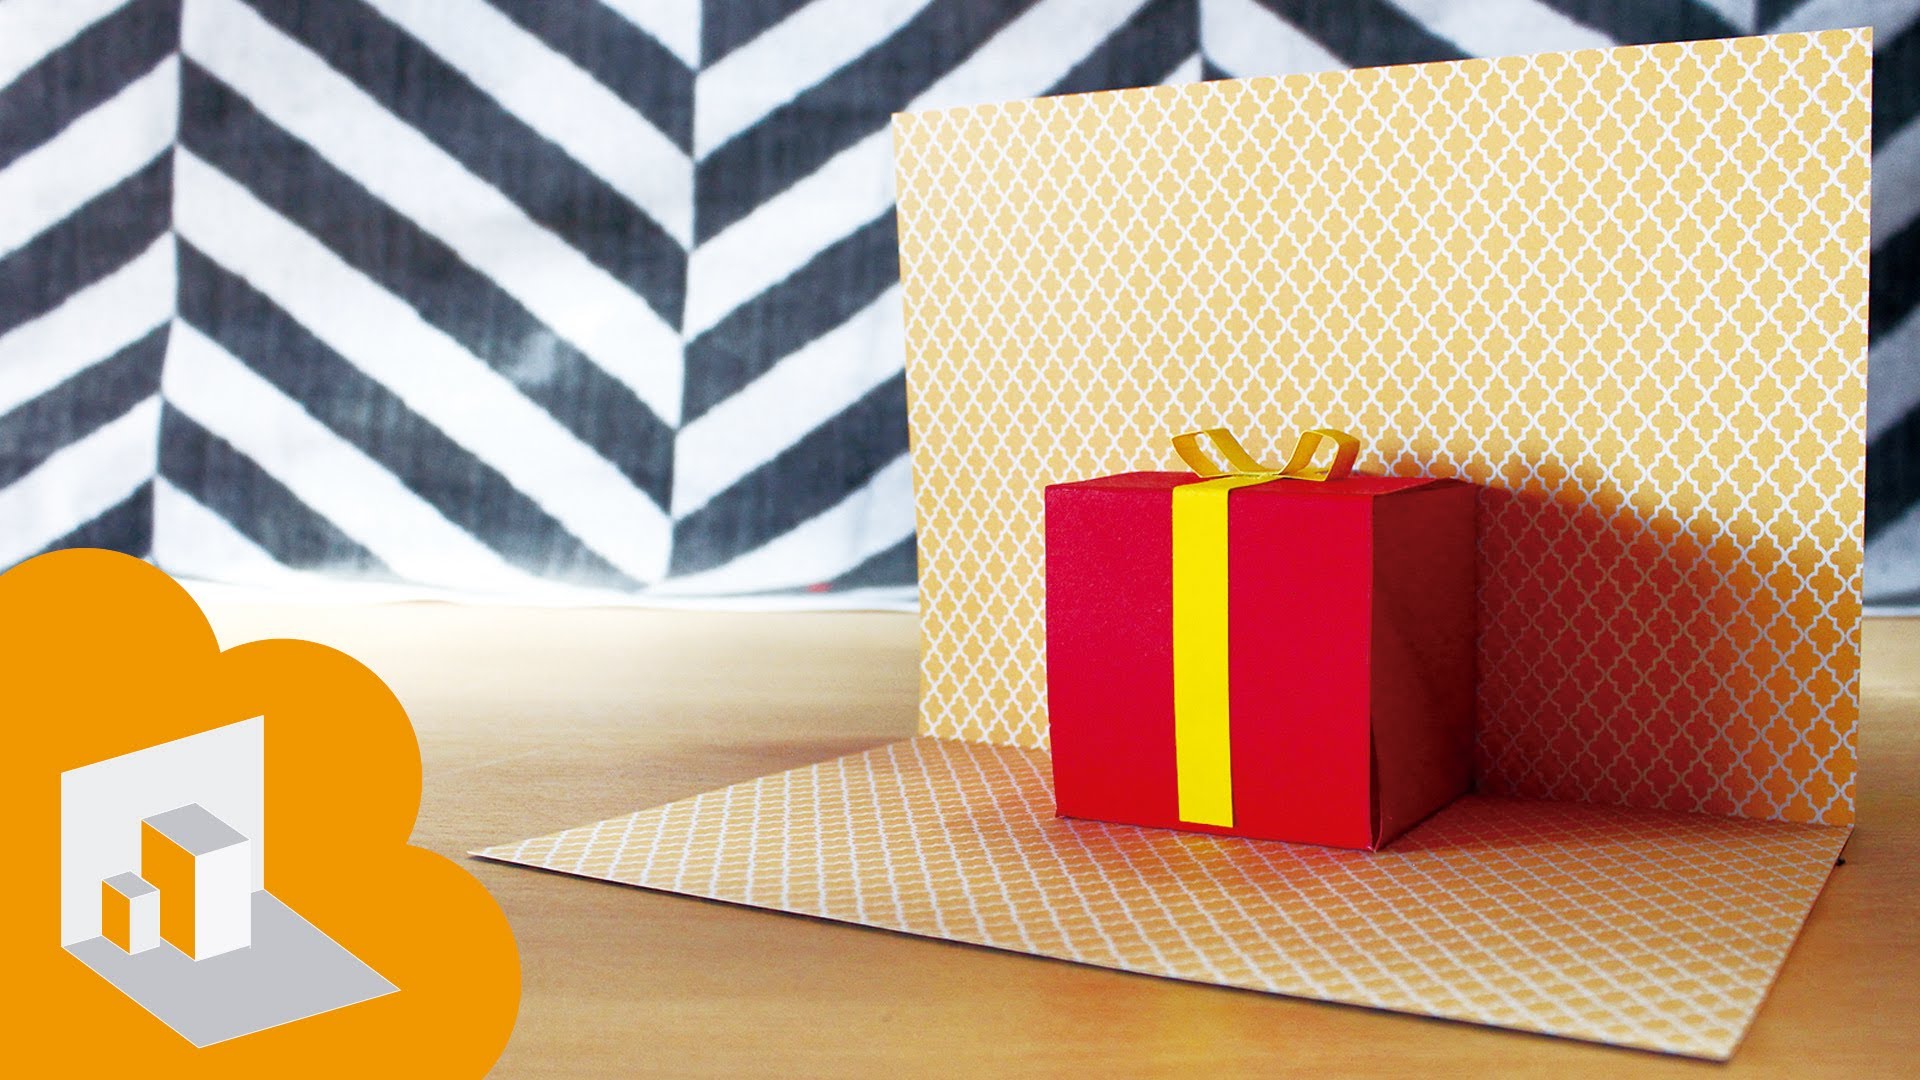 Thiệp sinh nhật 3D hộp quà: Cái gì kết hợp giữa thiệp sinh nhật và hộp quà trông hấp dẫn không? Đó là thiệp sinh nhật 3D hộp quà! Nó là một cách cực kỳ sang trọng để gửi lời chúc mừng sinh nhật đến người thân yêu của bạn. Thiệp sinh nhật 3D hộp quà có khả năng gửi đi thông điệp chúc mừng và những món quà nhỏ để làm cho ai cũng cảm thấy đặc biệt trong ngày sinh nhật của mình.